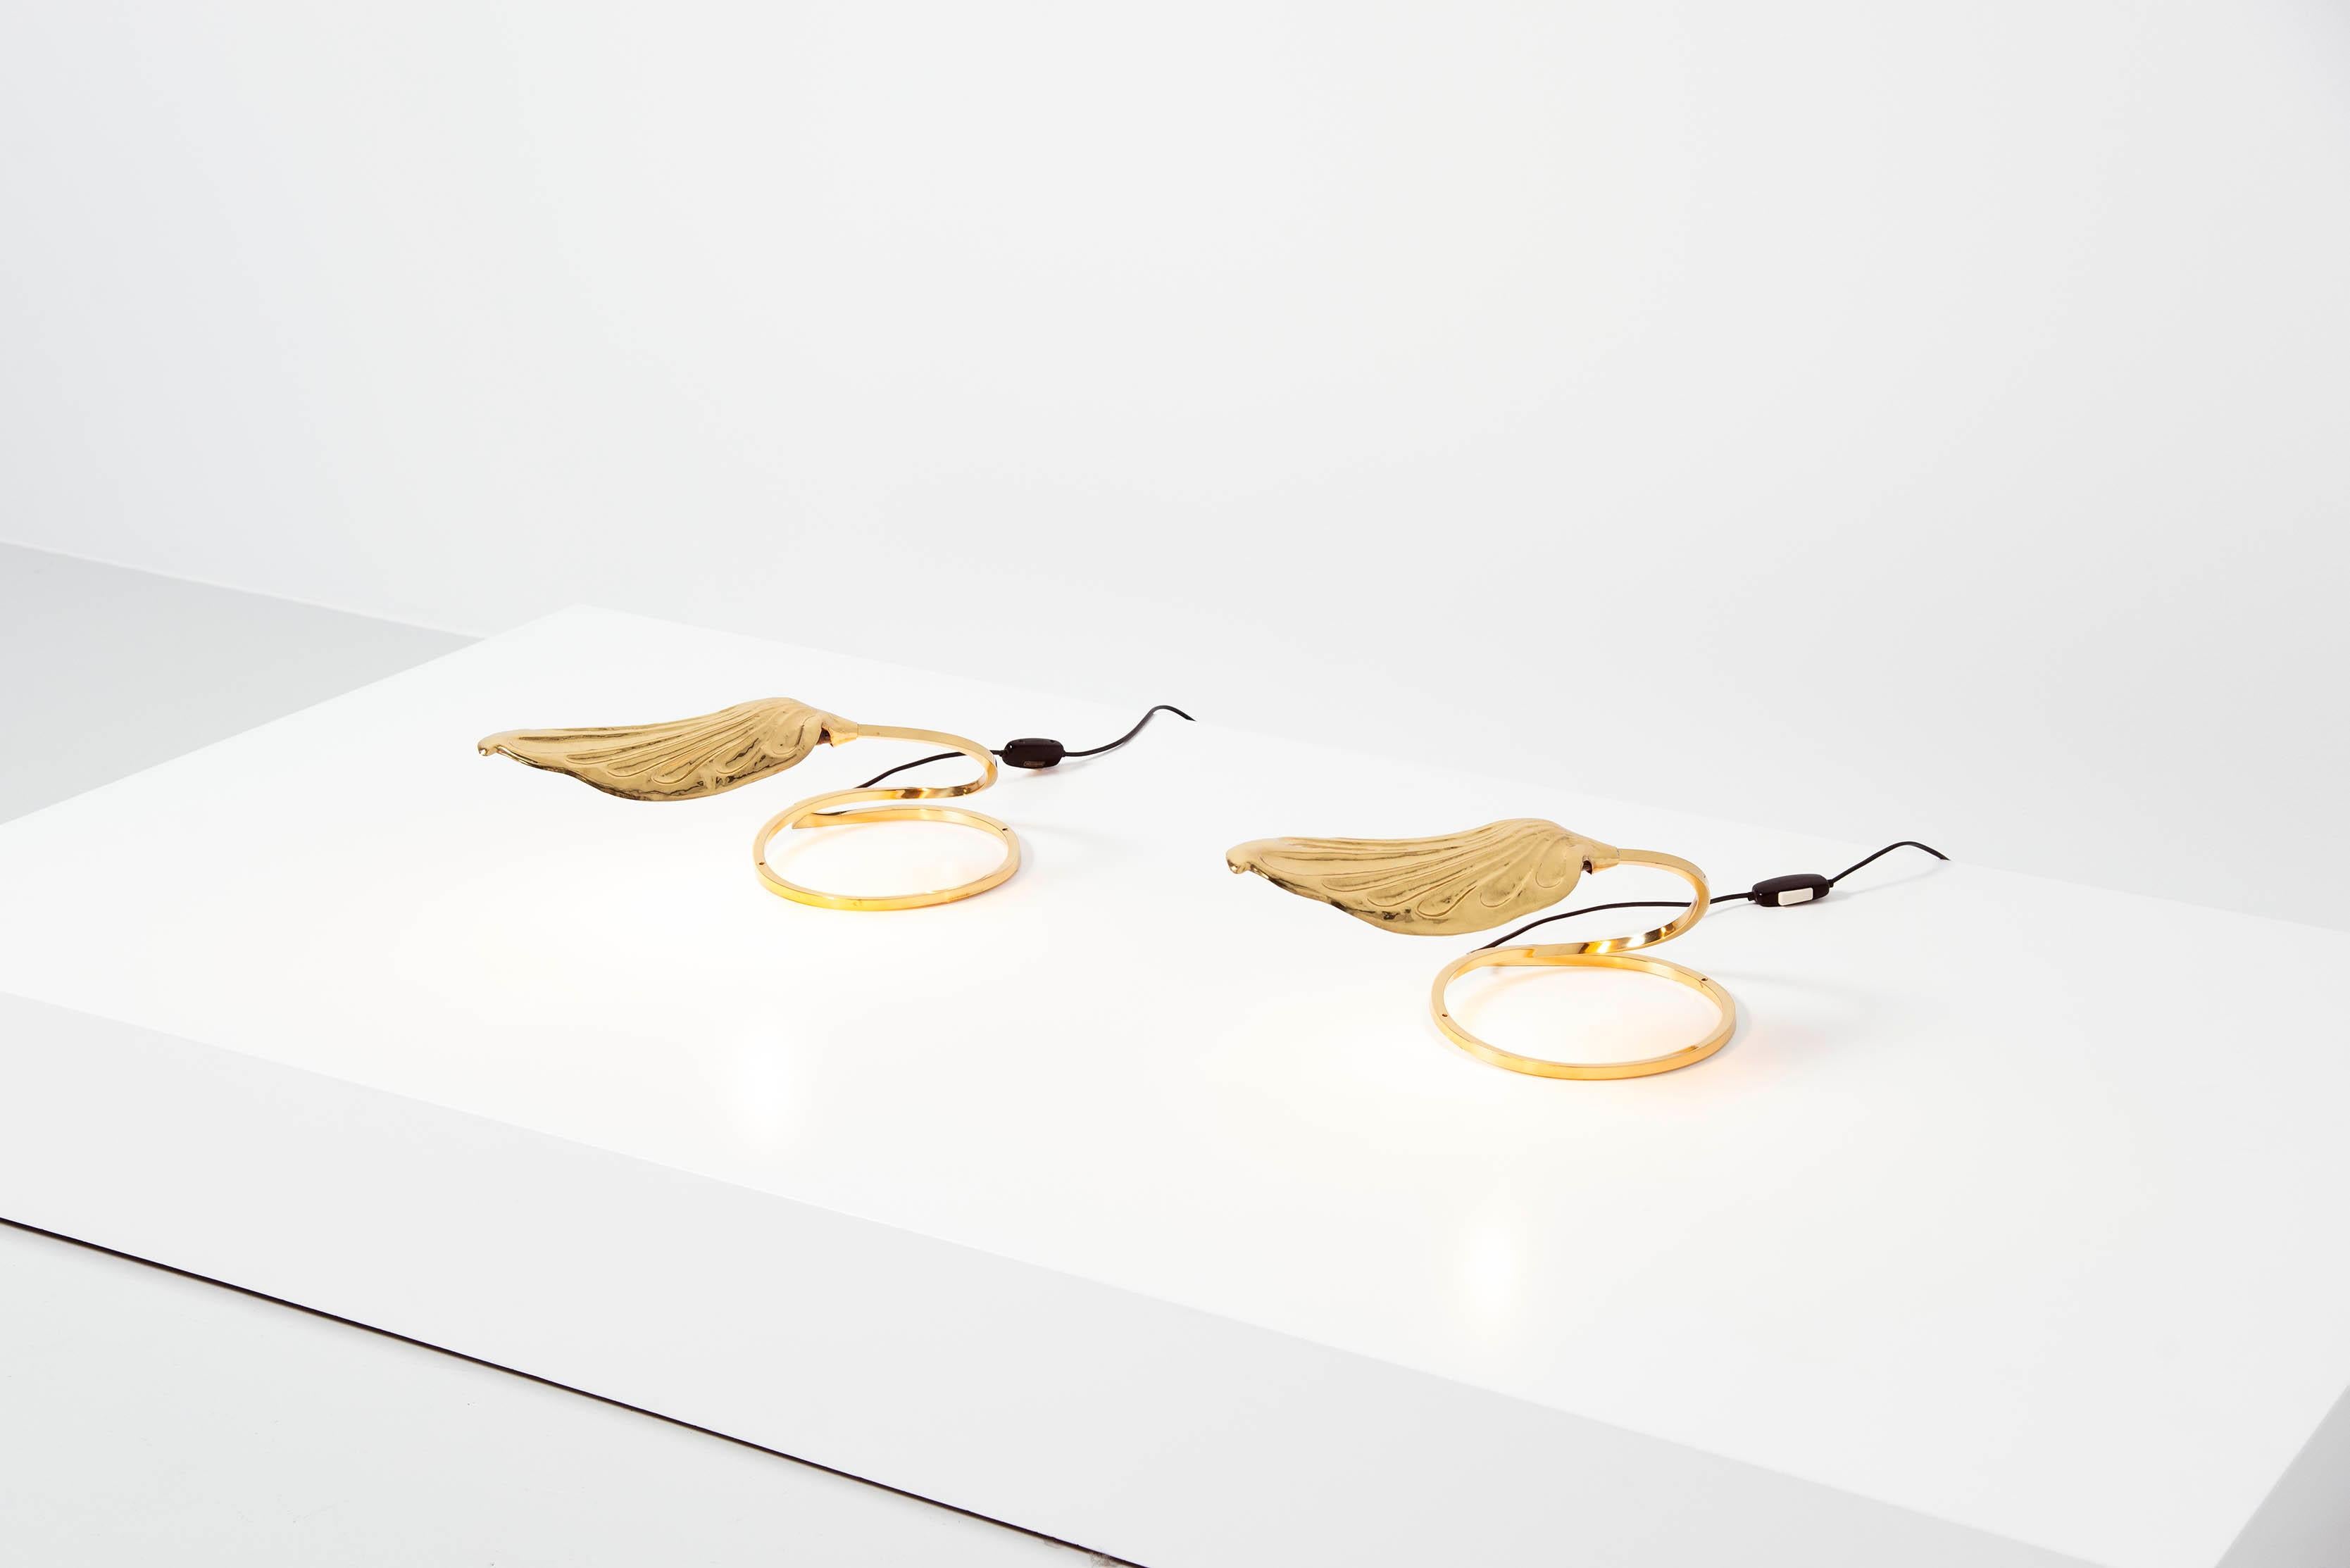 Skulpturales Paar Tisch- oder Wandlampen, entworfen von Carlo Giorgi und hergestellt von Bottega Gadda, Mailand, Italien 1970. Diese skulpturalen Lampen haben blattförmige Schirme und sind aus massivem Messing gefertigt. Sie können als Tischlampen